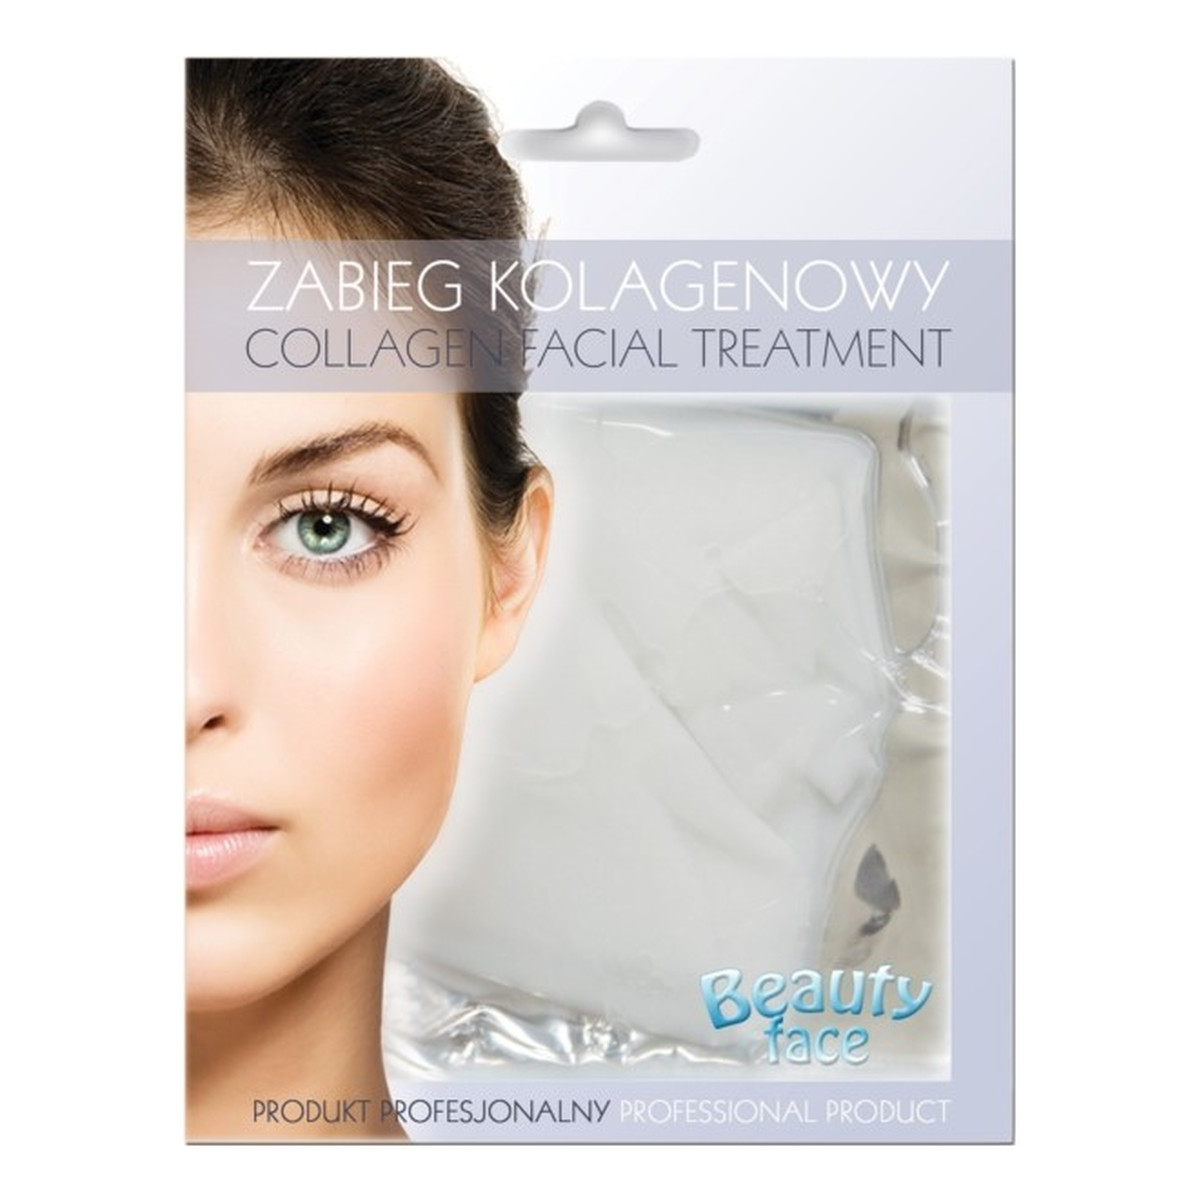 Beauty Face Collagen Facial Treatment odmładzający zabieg kolagenowy do skóry delikatnej w płacie hydrożelowym